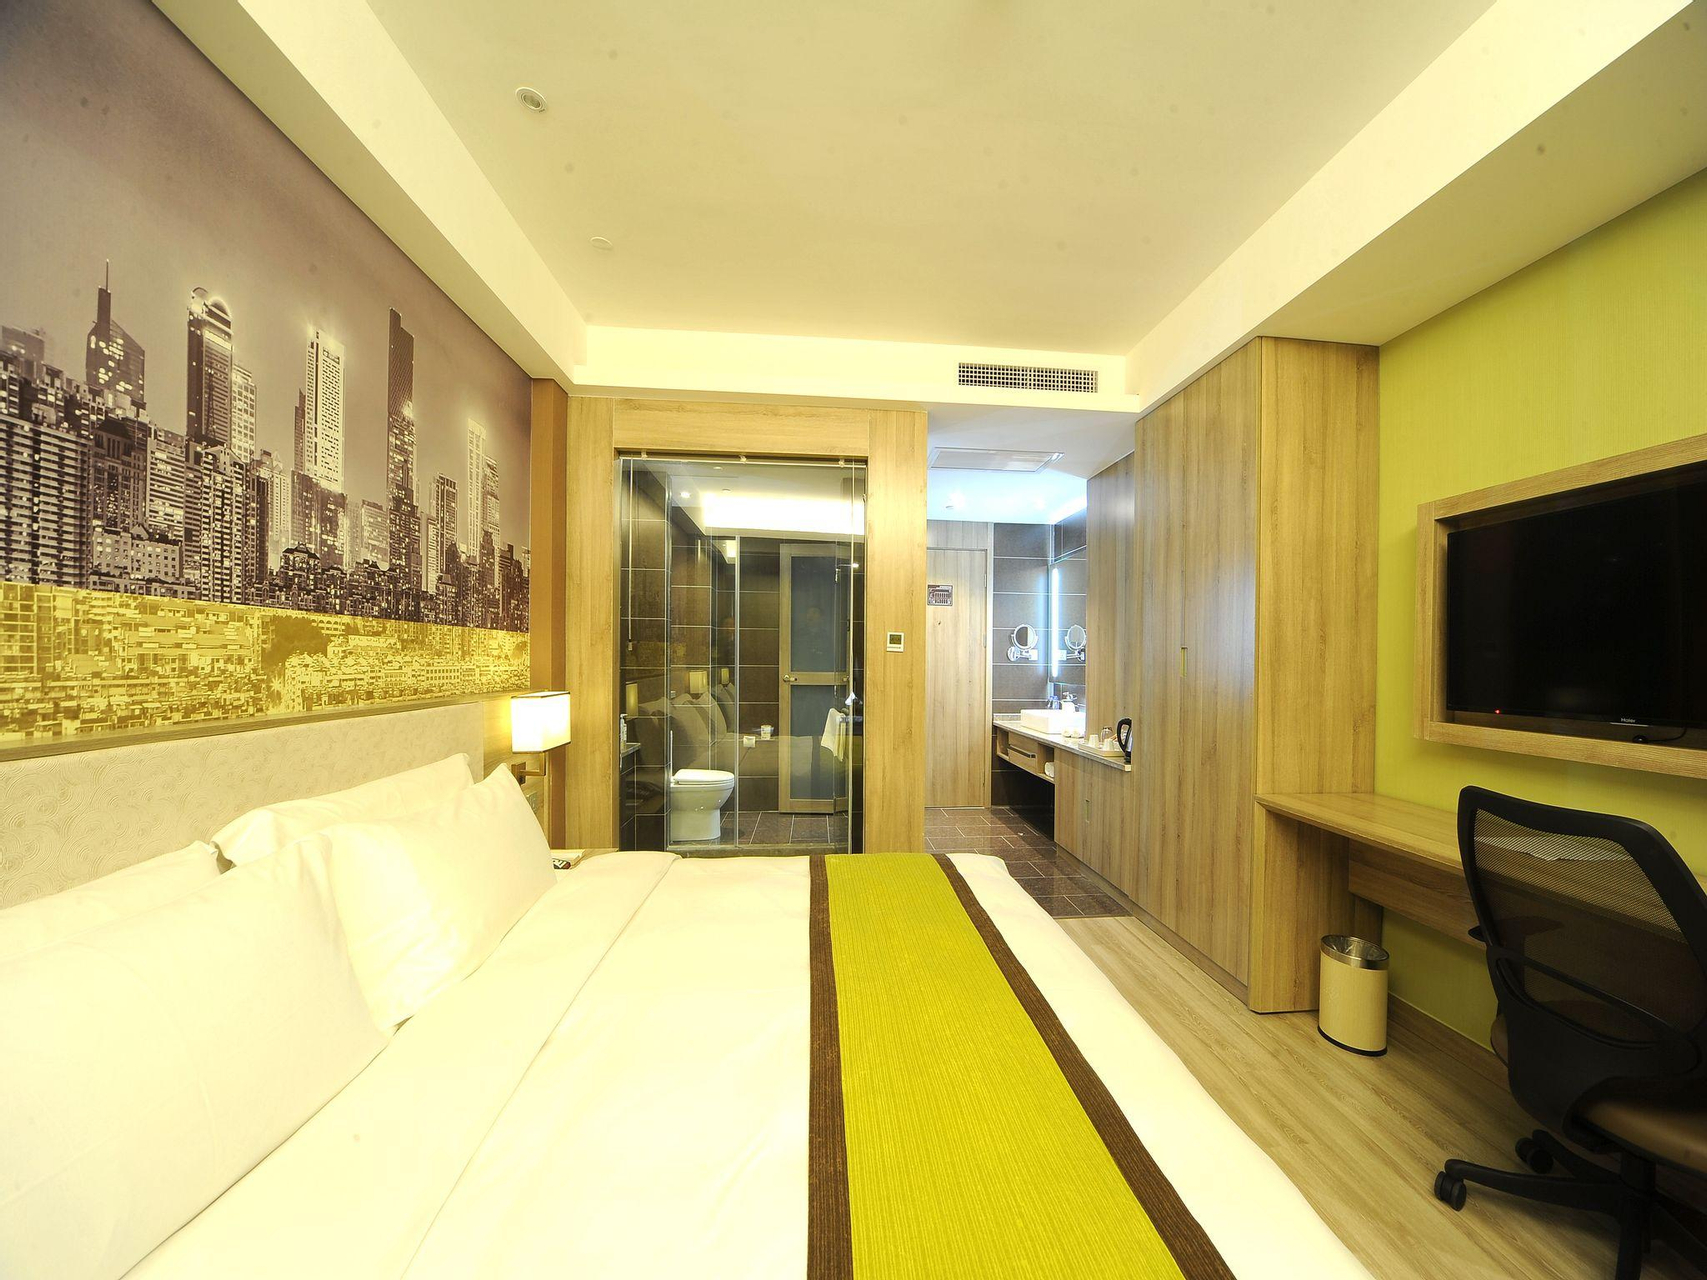 Bedroom 1, Atour Hotel Nanjing Hu'Nan Road, Nanjing